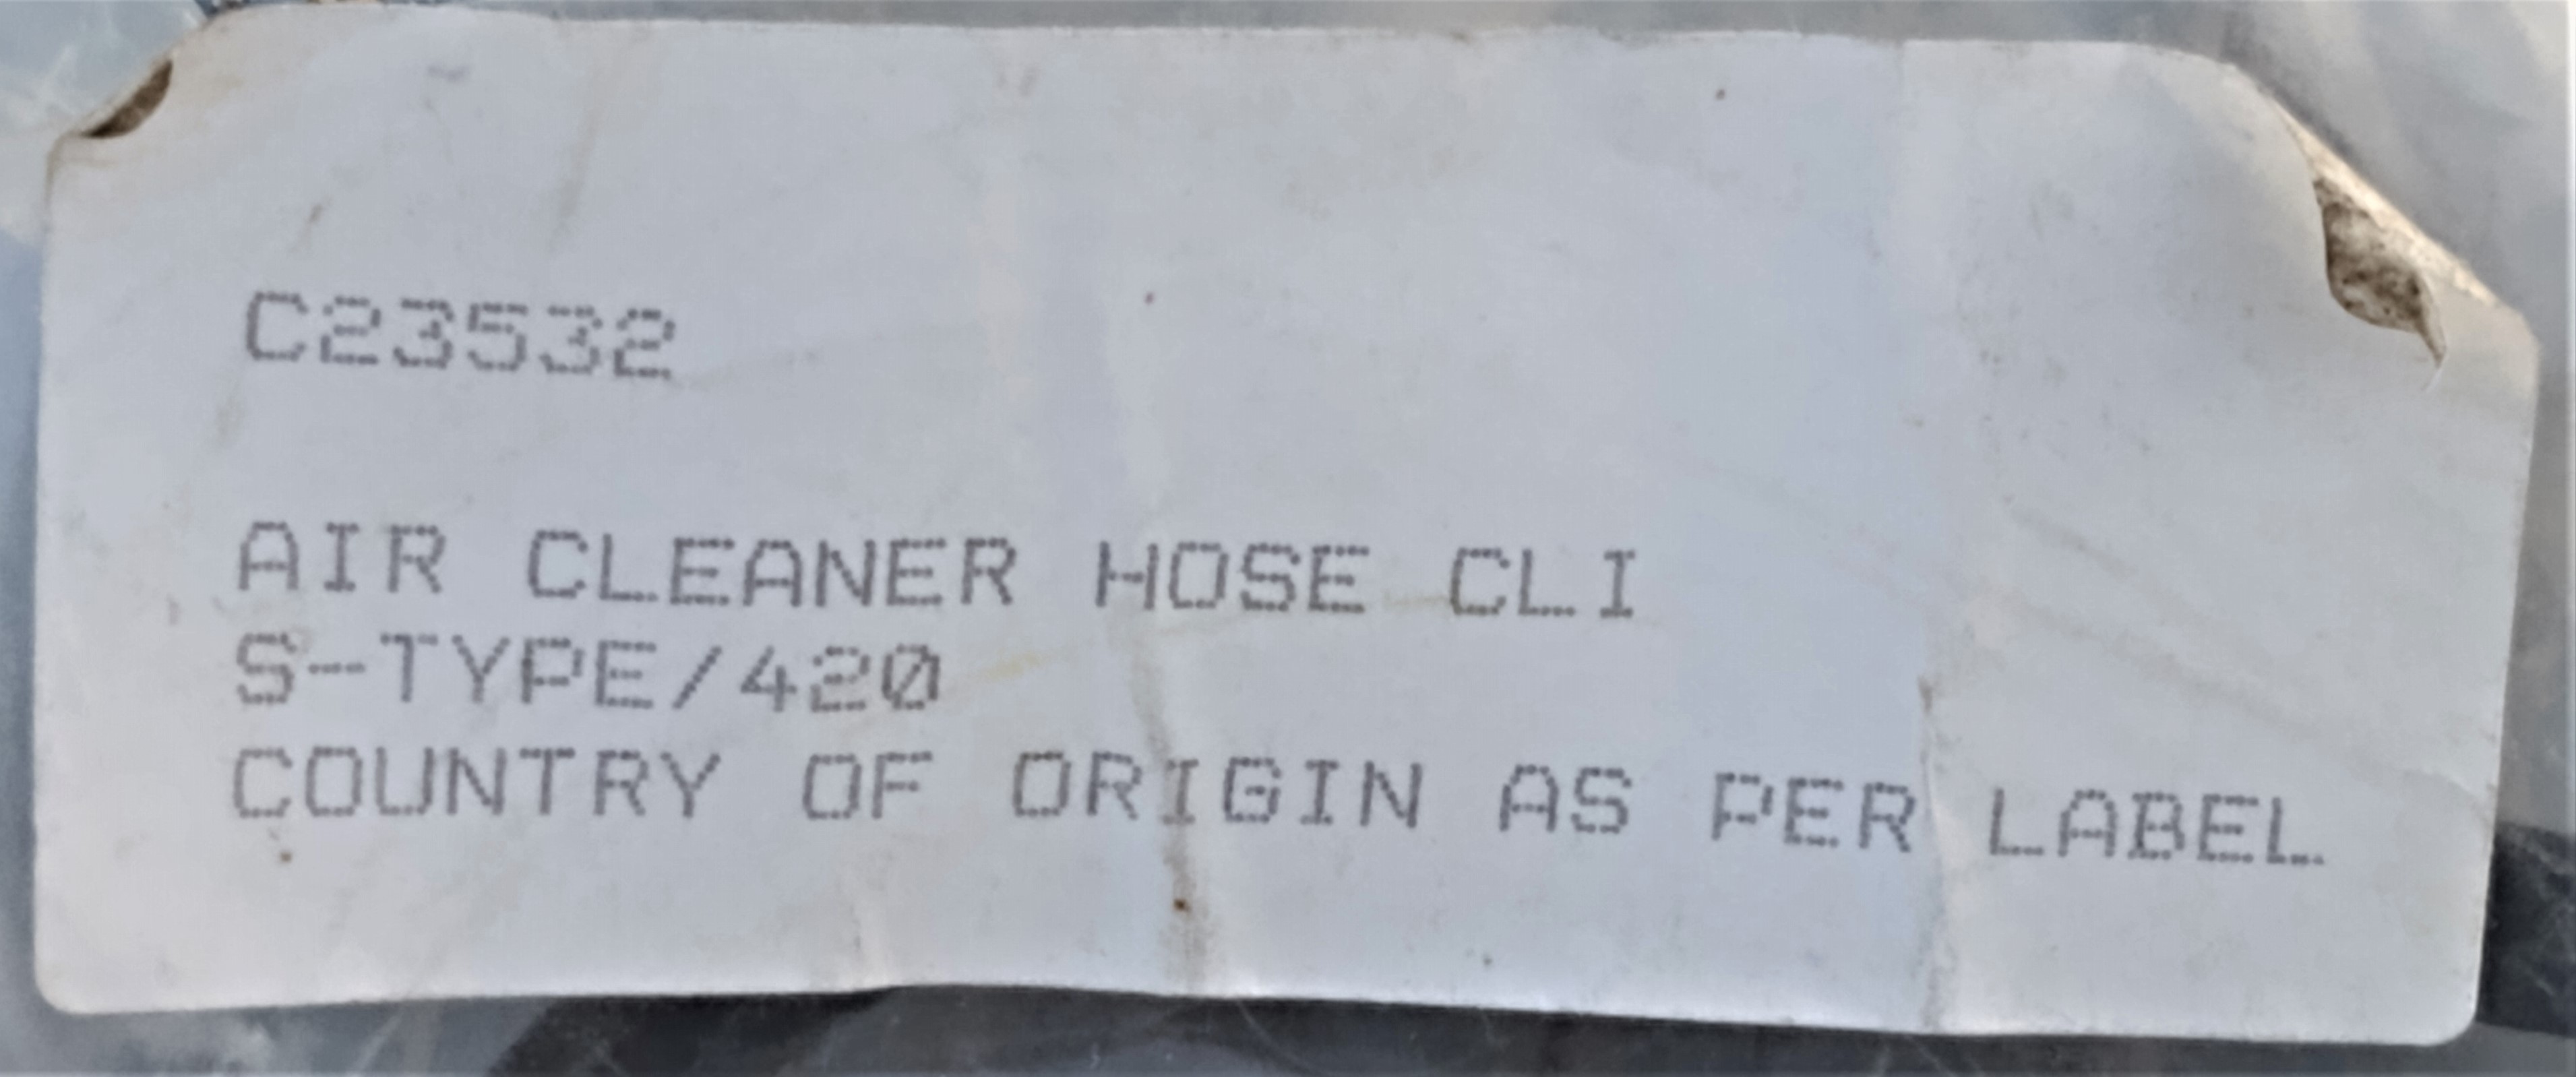 C.23532 Clip label